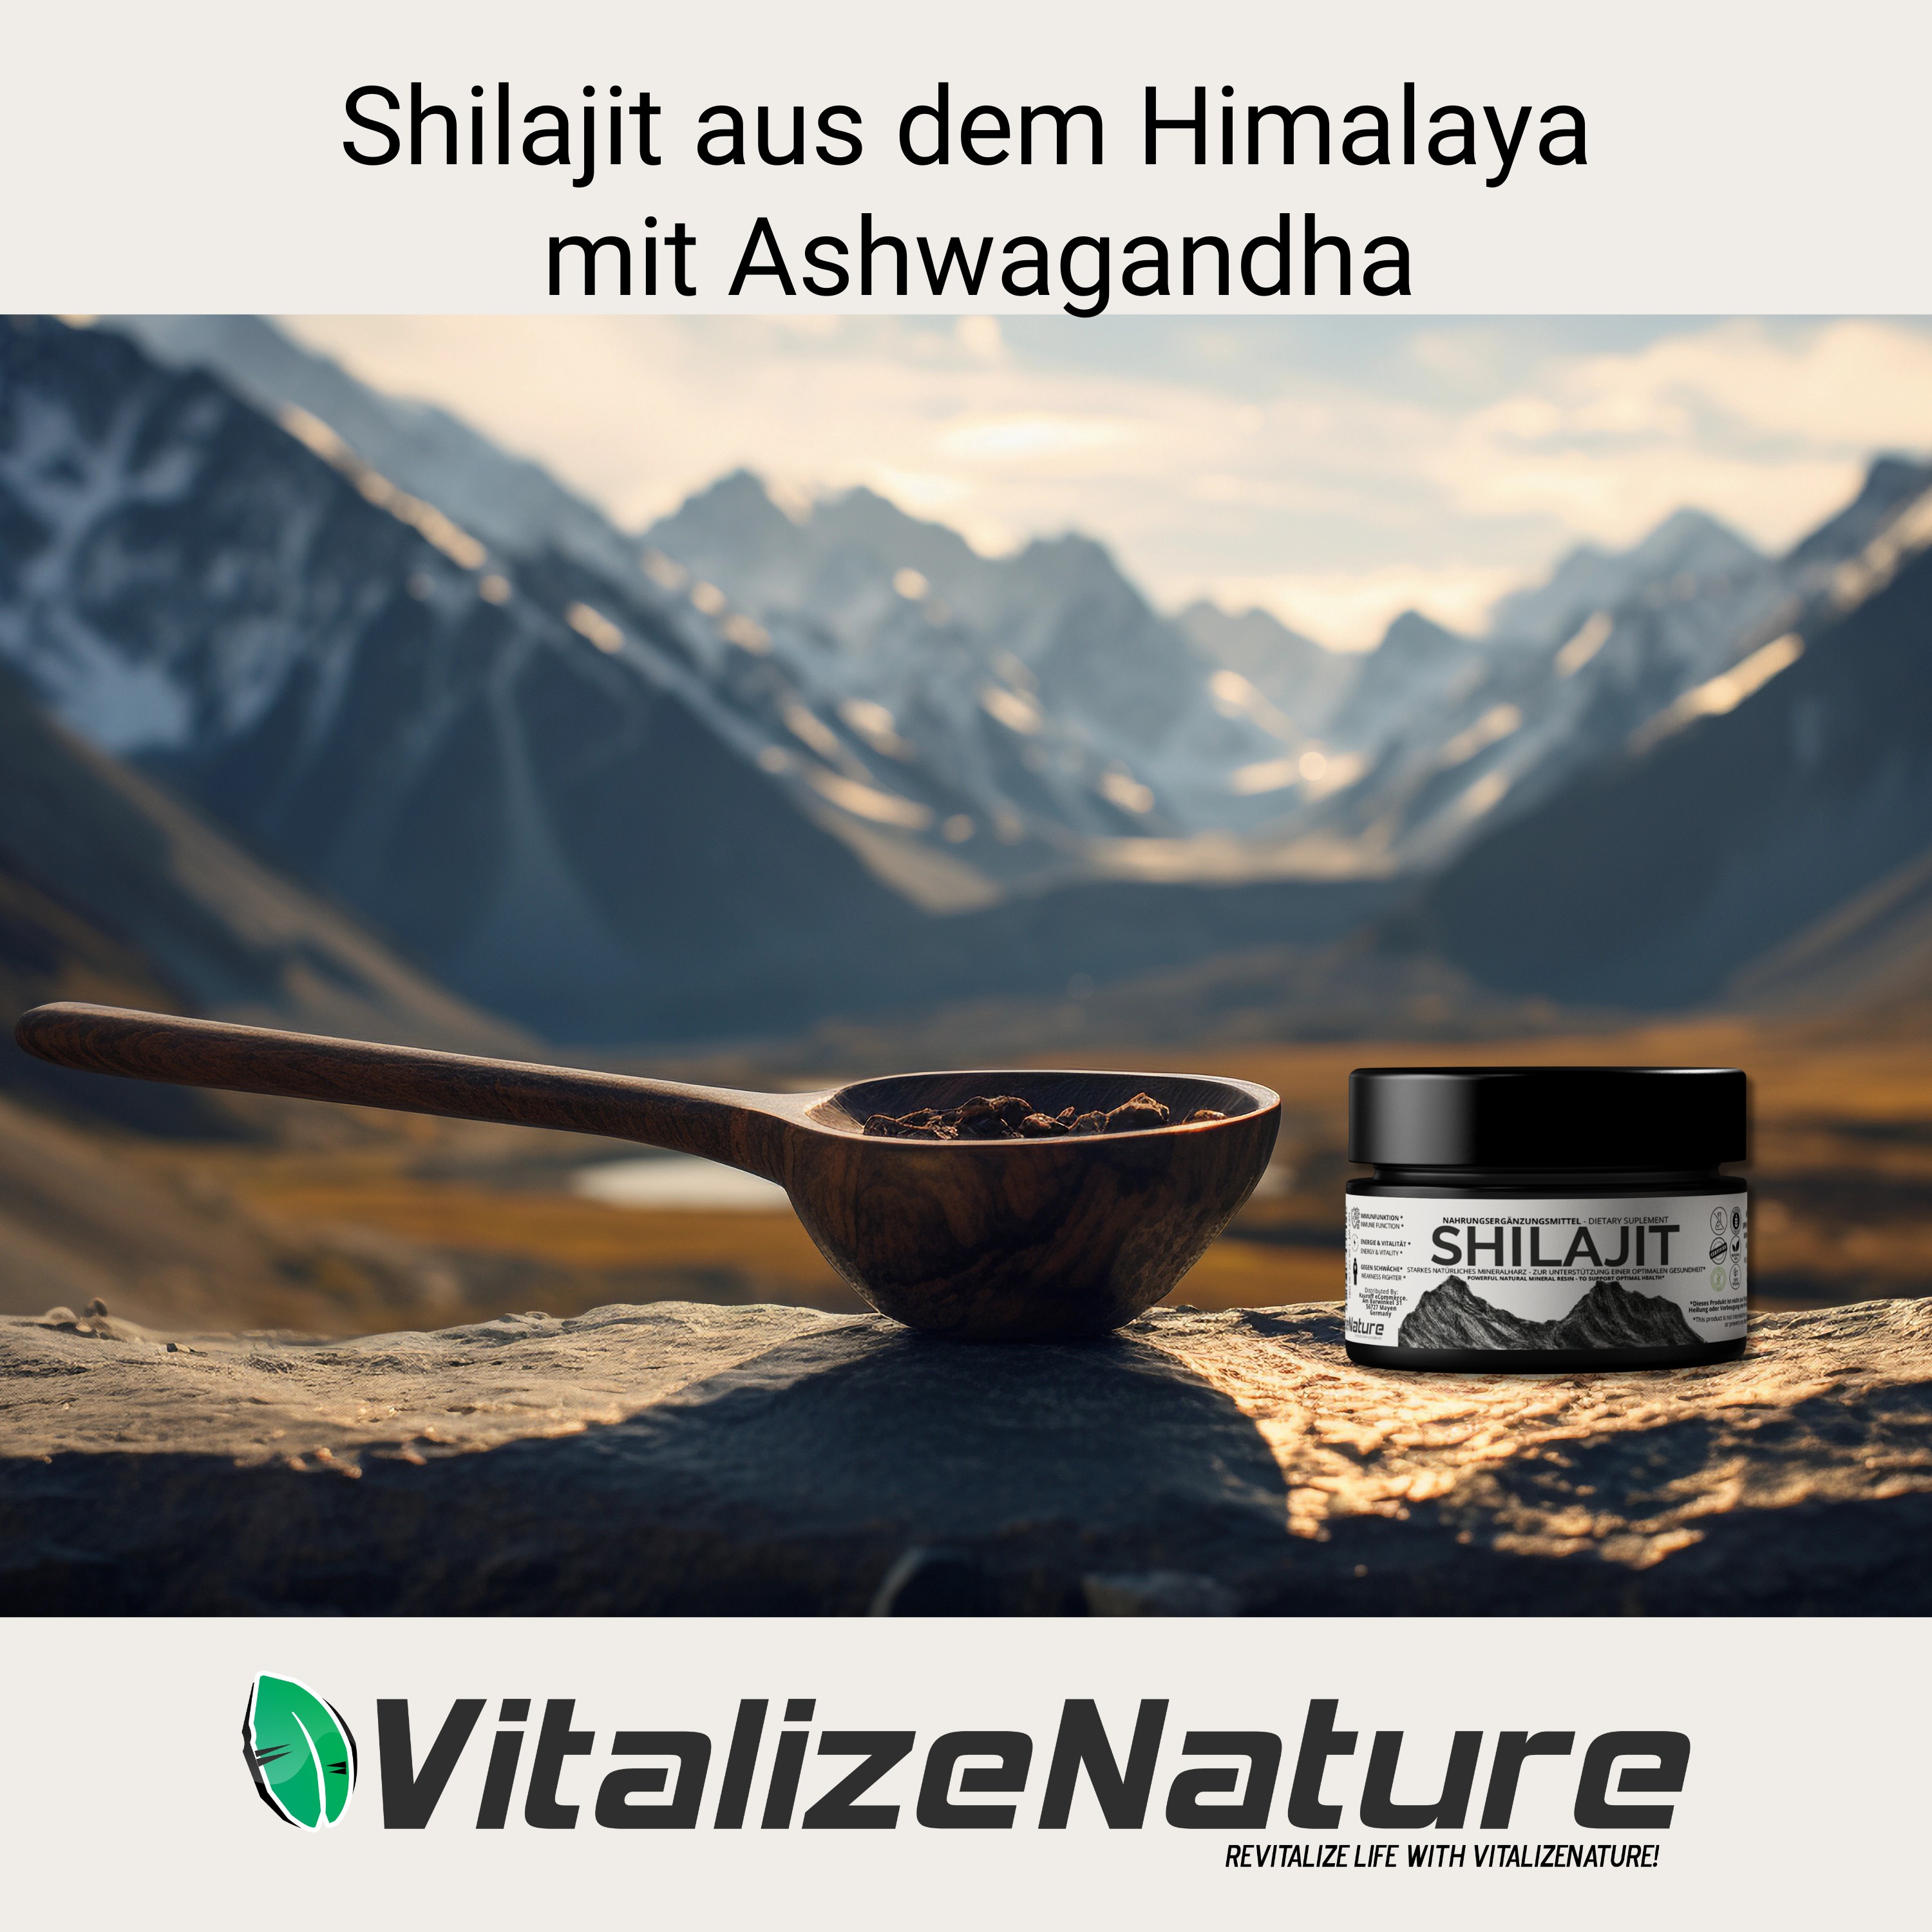 VitalizeNature - Shilajit - 30g Shilajit Original + Ashwagandha - natürliches Himalaya Shilajit - 500mg Shilajit Resin pro Tagesdosis & 100mg Ashwanganda - Shijalit & Ayurvedischer Kräutermischung